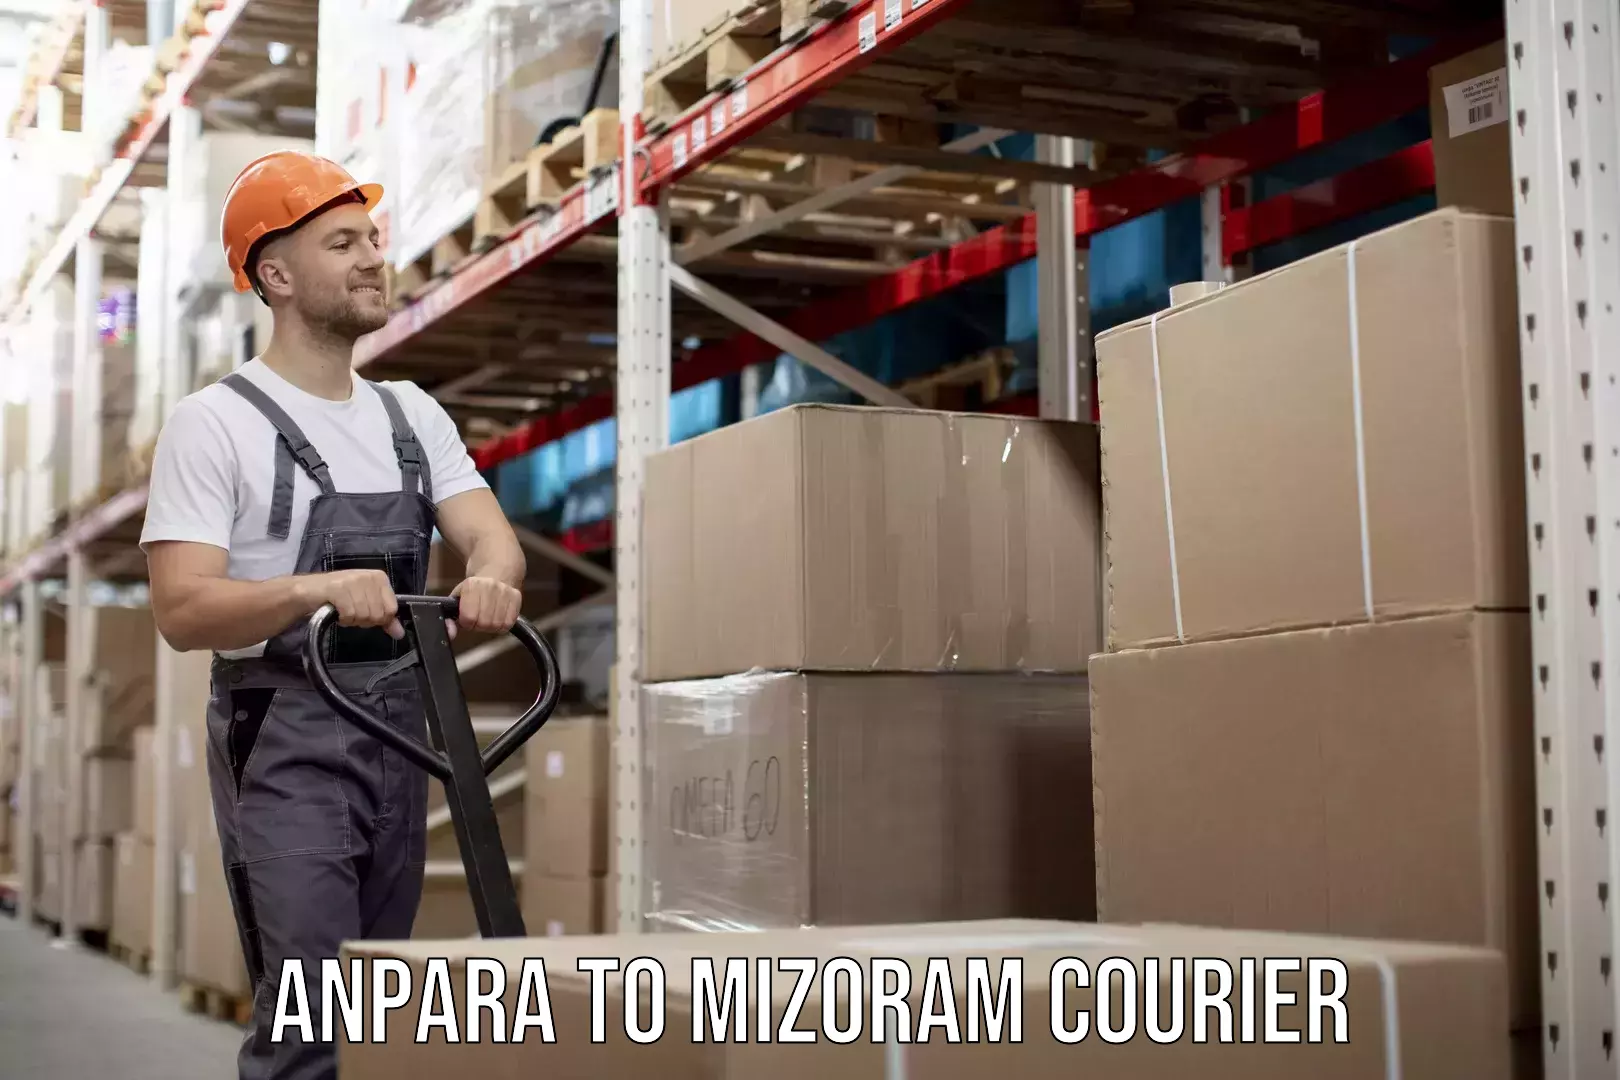 Courier service innovation Anpara to Mizoram